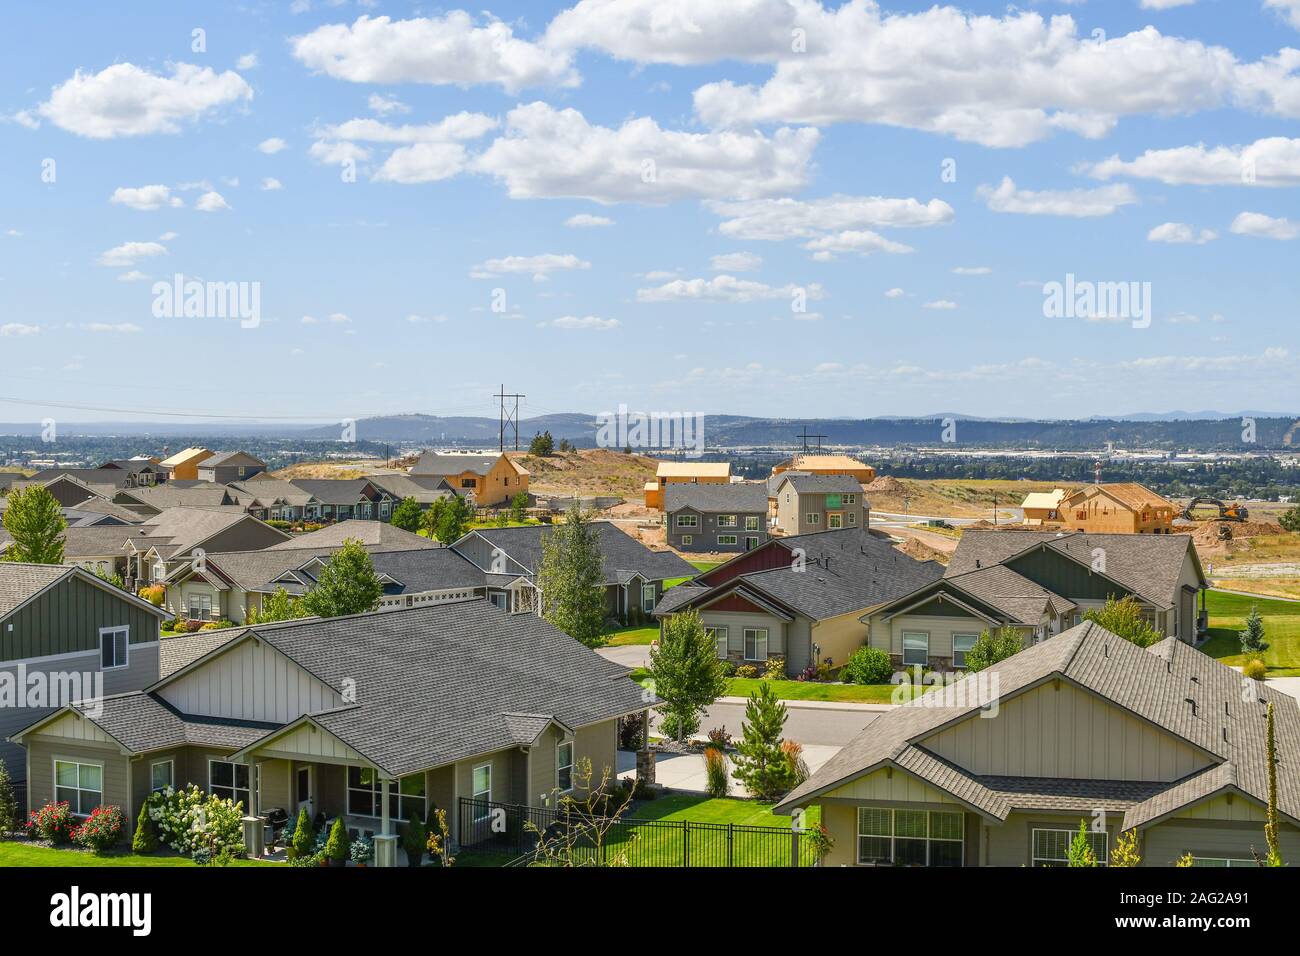 La construction de nouvelles maisons en construction dans un lotissement colline surplombant une vallée dans une zone de maisons neuves dans la région de Spokane, Washington aux États-Unis. Banque D'Images